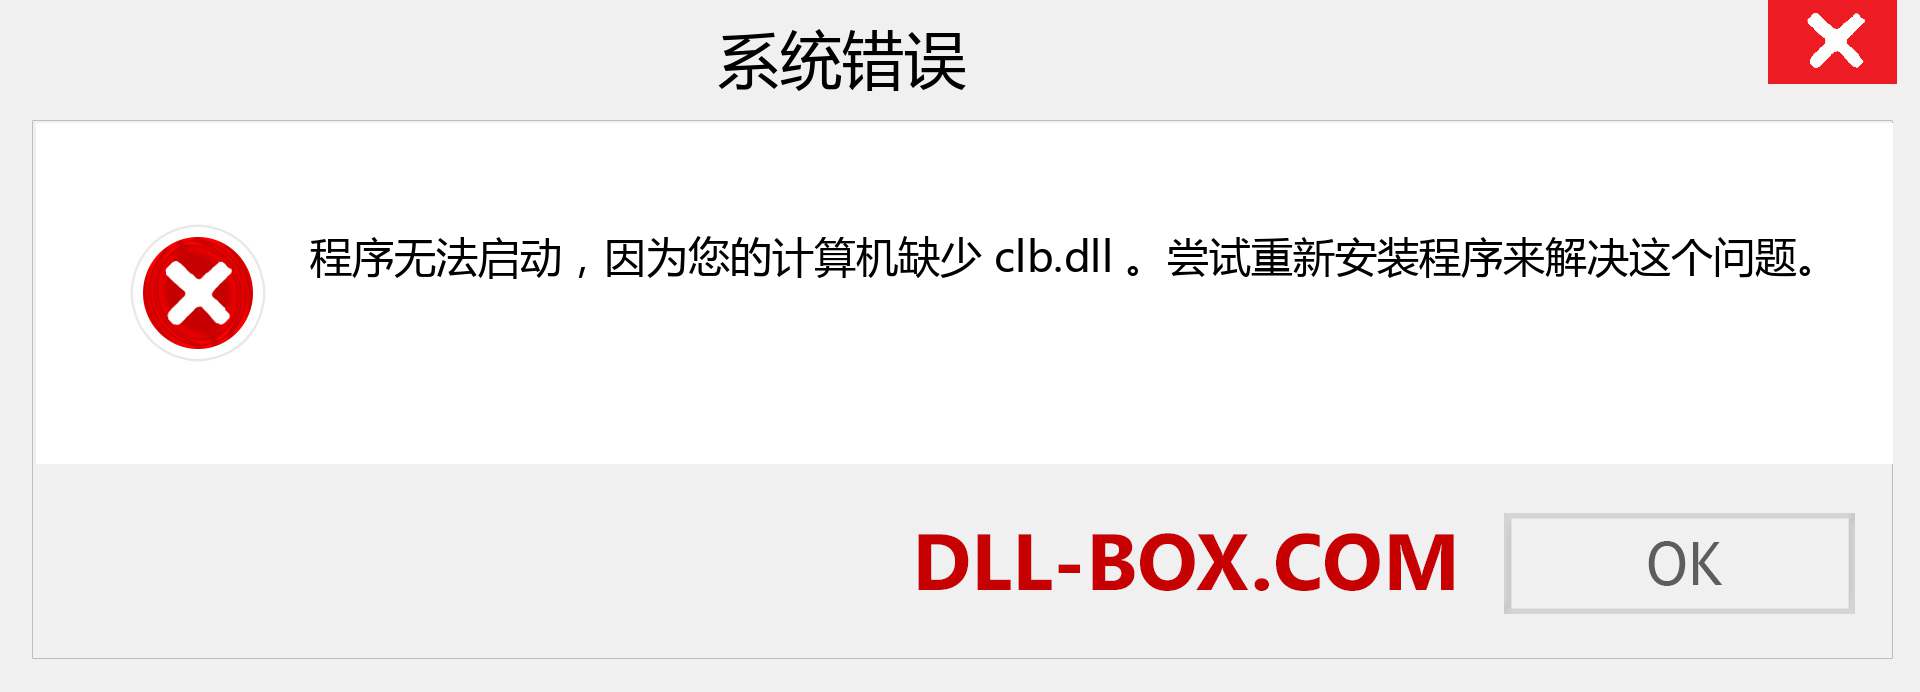 clb.dll 文件丢失？。 适用于 Windows 7、8、10 的下载 - 修复 Windows、照片、图像上的 clb dll 丢失错误